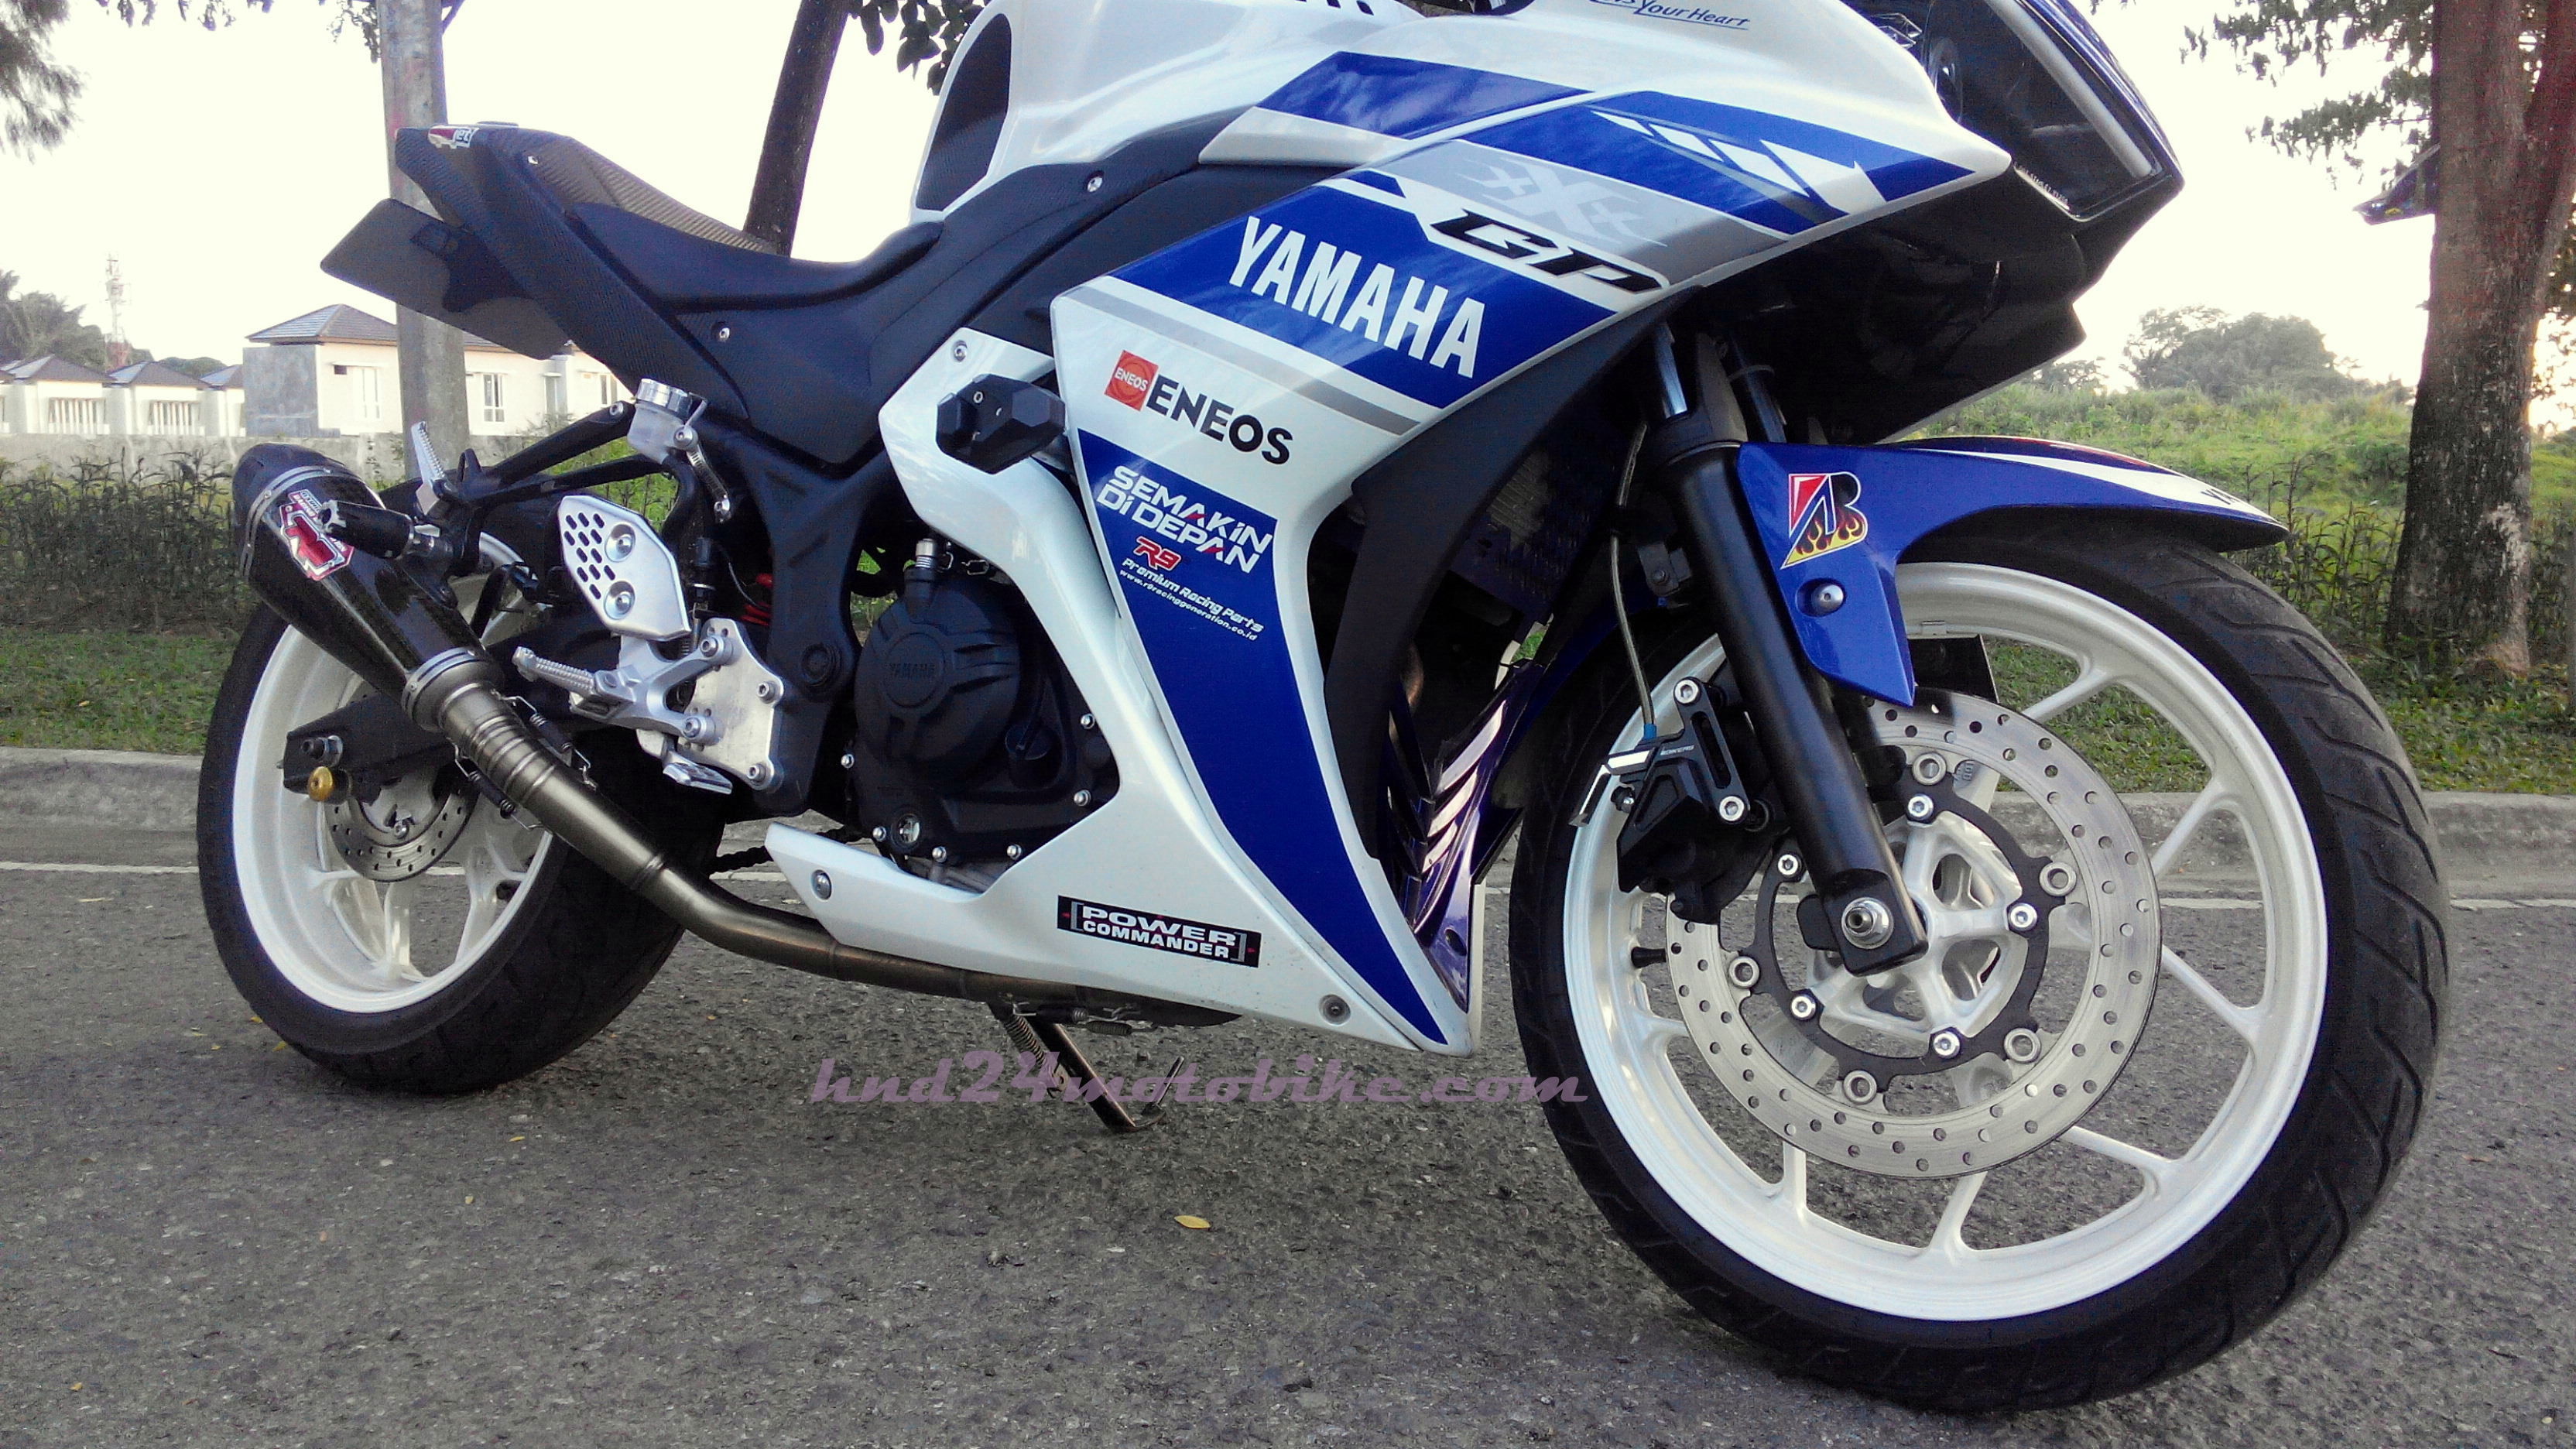 Modifikasi Yamaha R25 Tampilan Dan Performa Seimbang